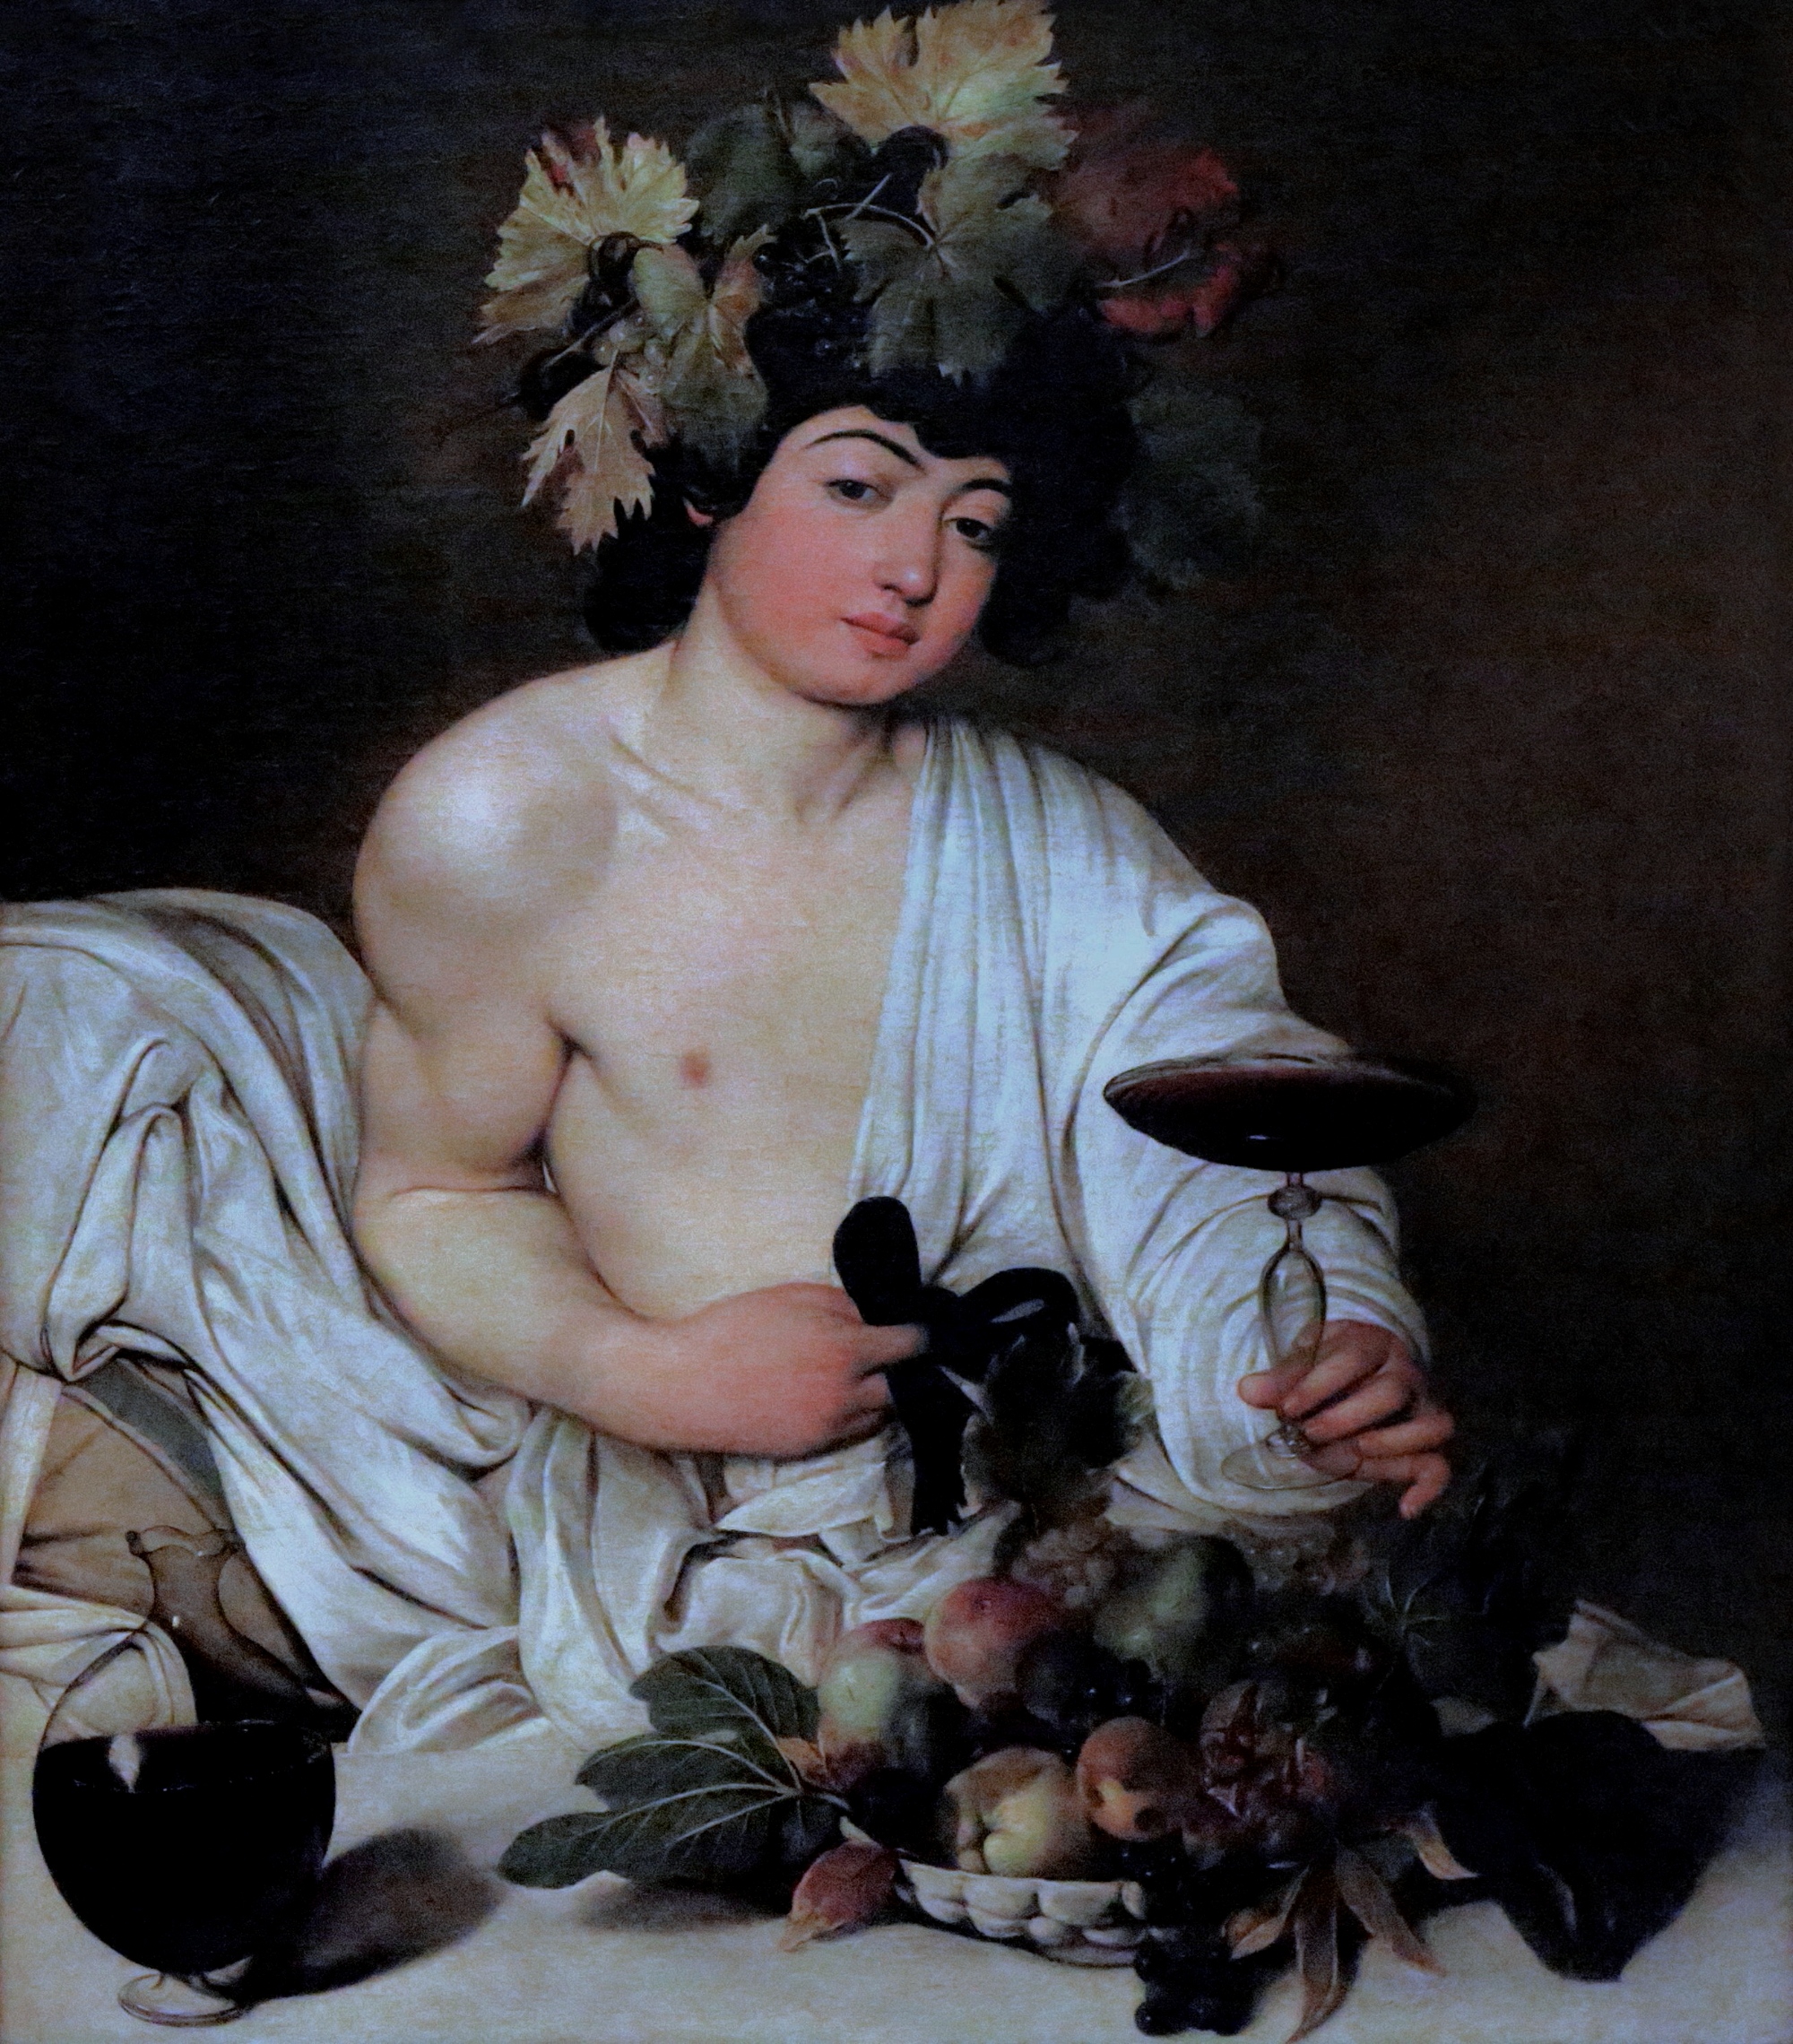 Bacco, Caravaggio